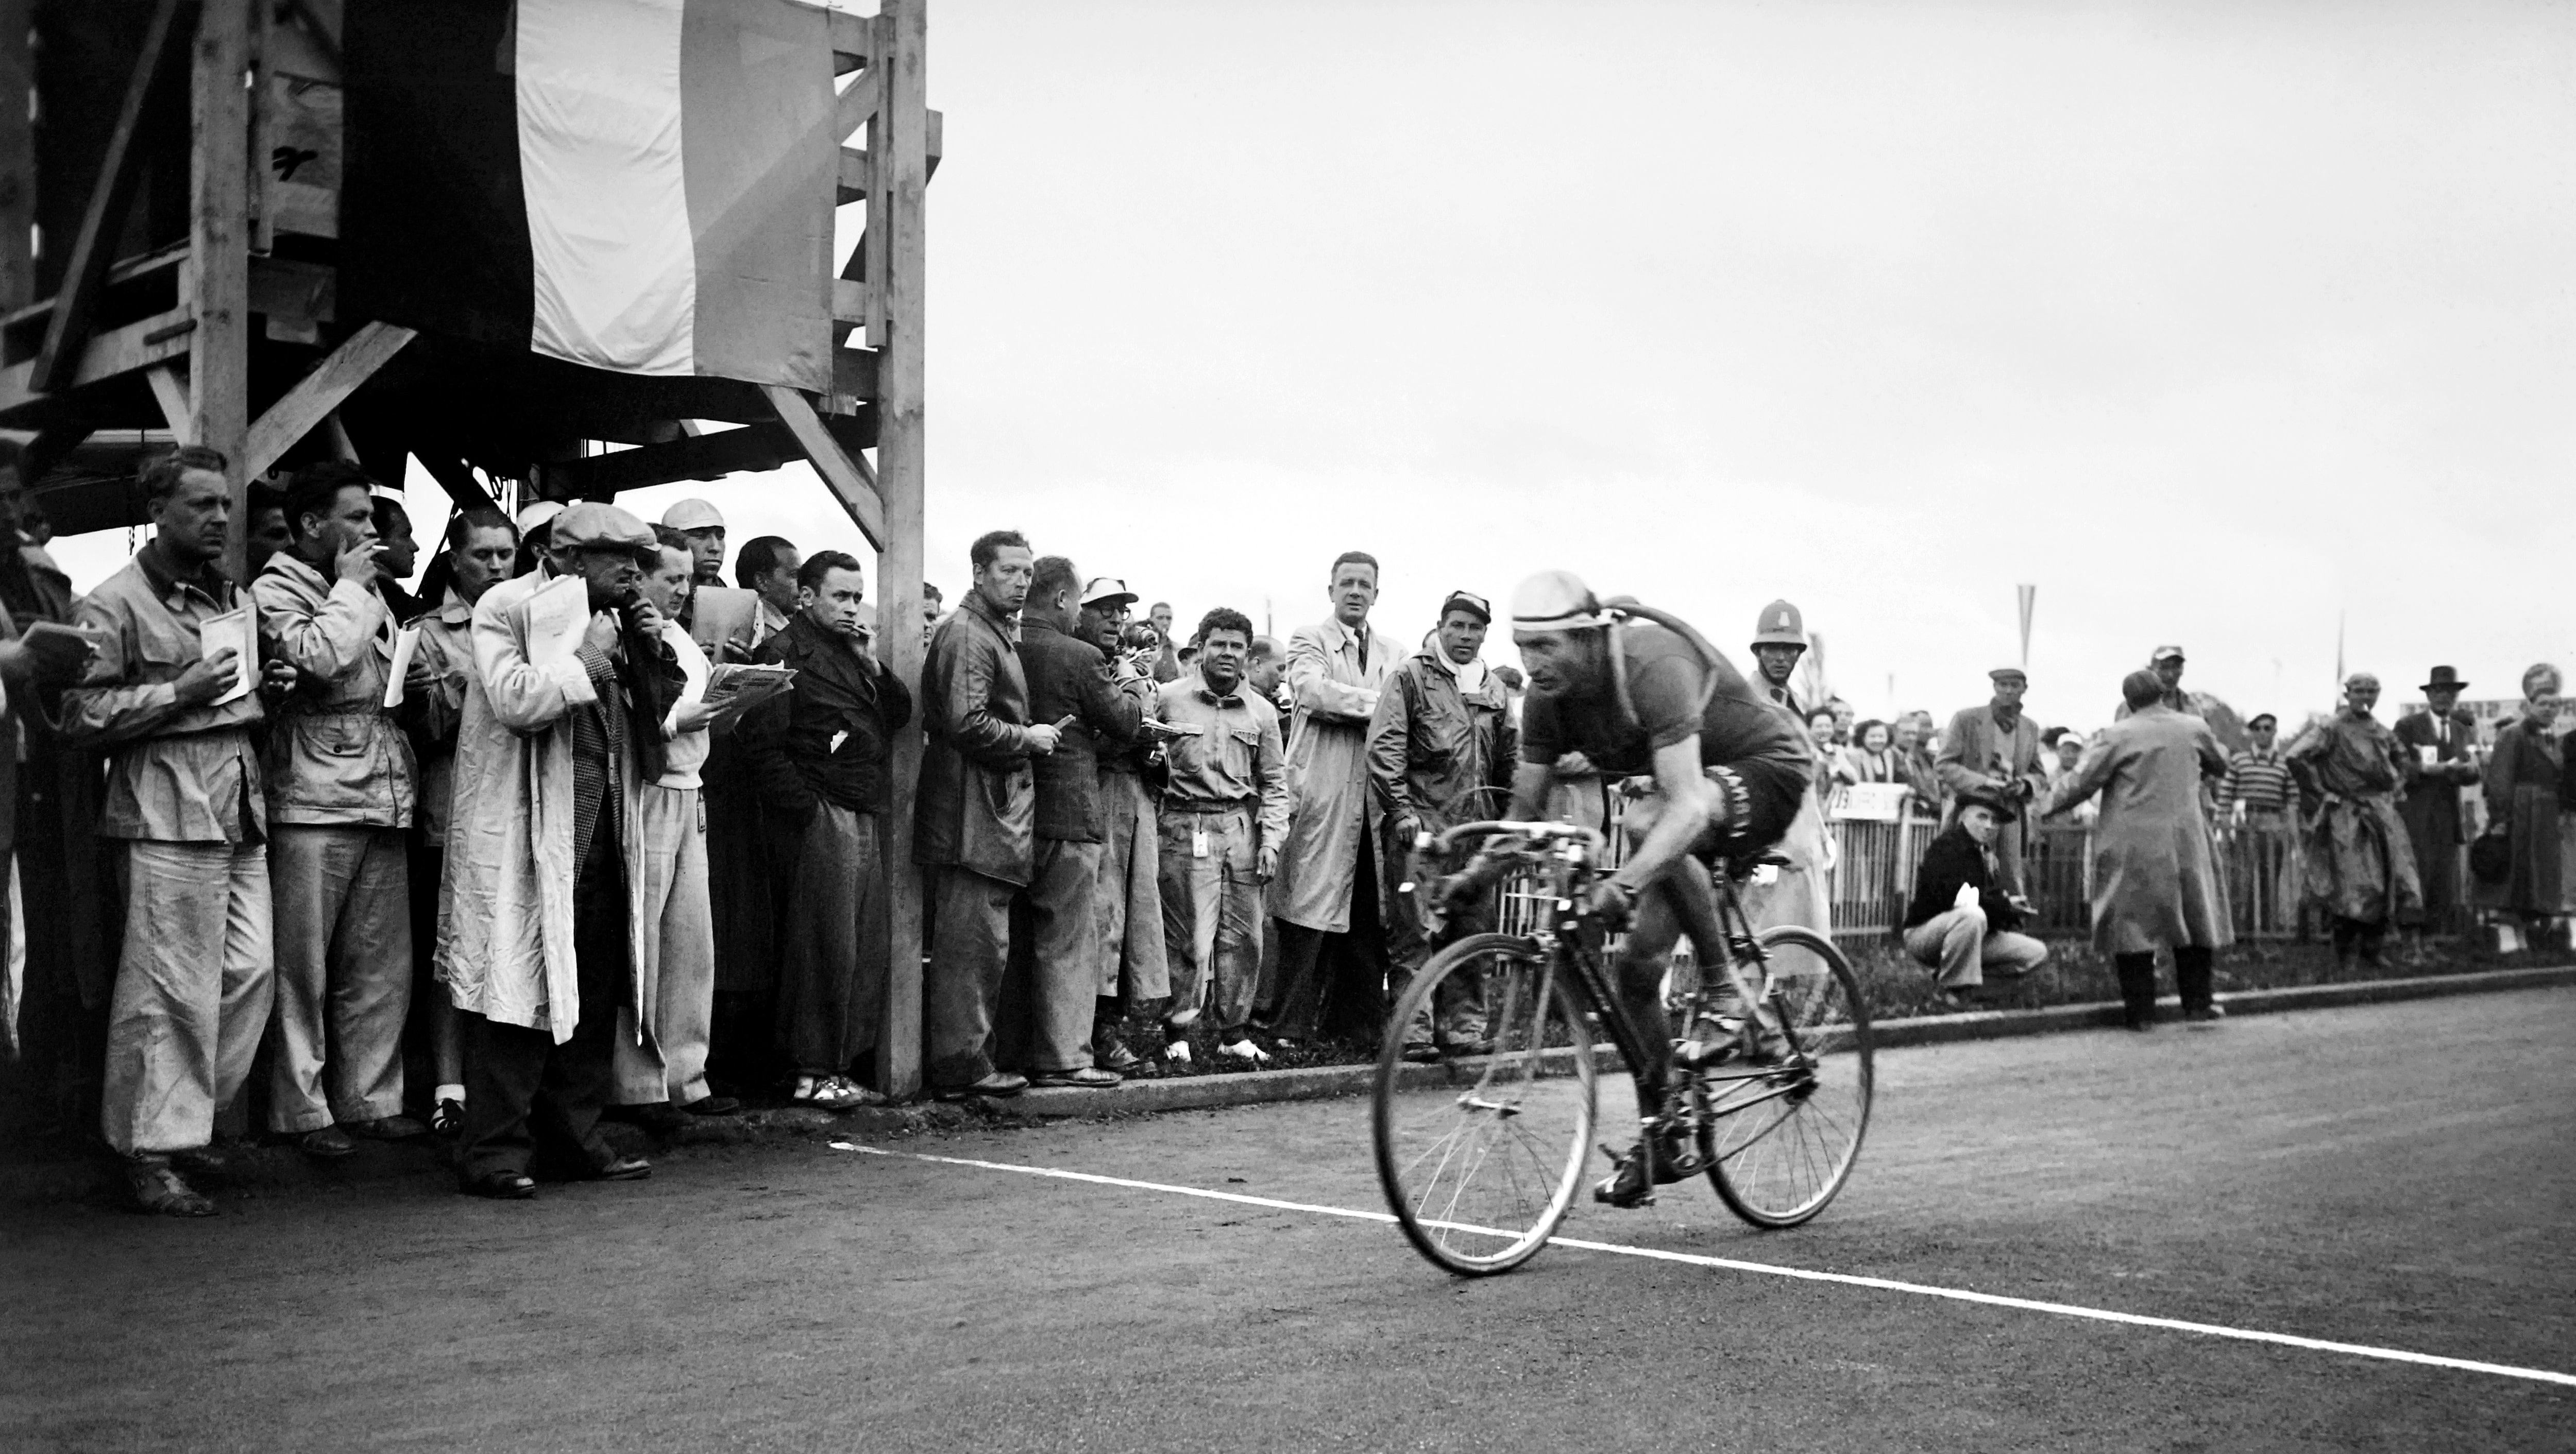 Gino Bartali mentre taglia il traguardo vincendo la quindicesima tappa del Tour de France tra Aix-les-Bains e Losanna (Svizzera) il 18 luglio 1948. Bartali ha vinto la sua terza tappa consecutiva nelle Alpi e ha mantenuto la maglia gialla di leader. In totale quell'anno ha vinto sette tappe complessive conquistando poi il suo secondo Tour de France, dieci anni dopo la sua prima vittoria